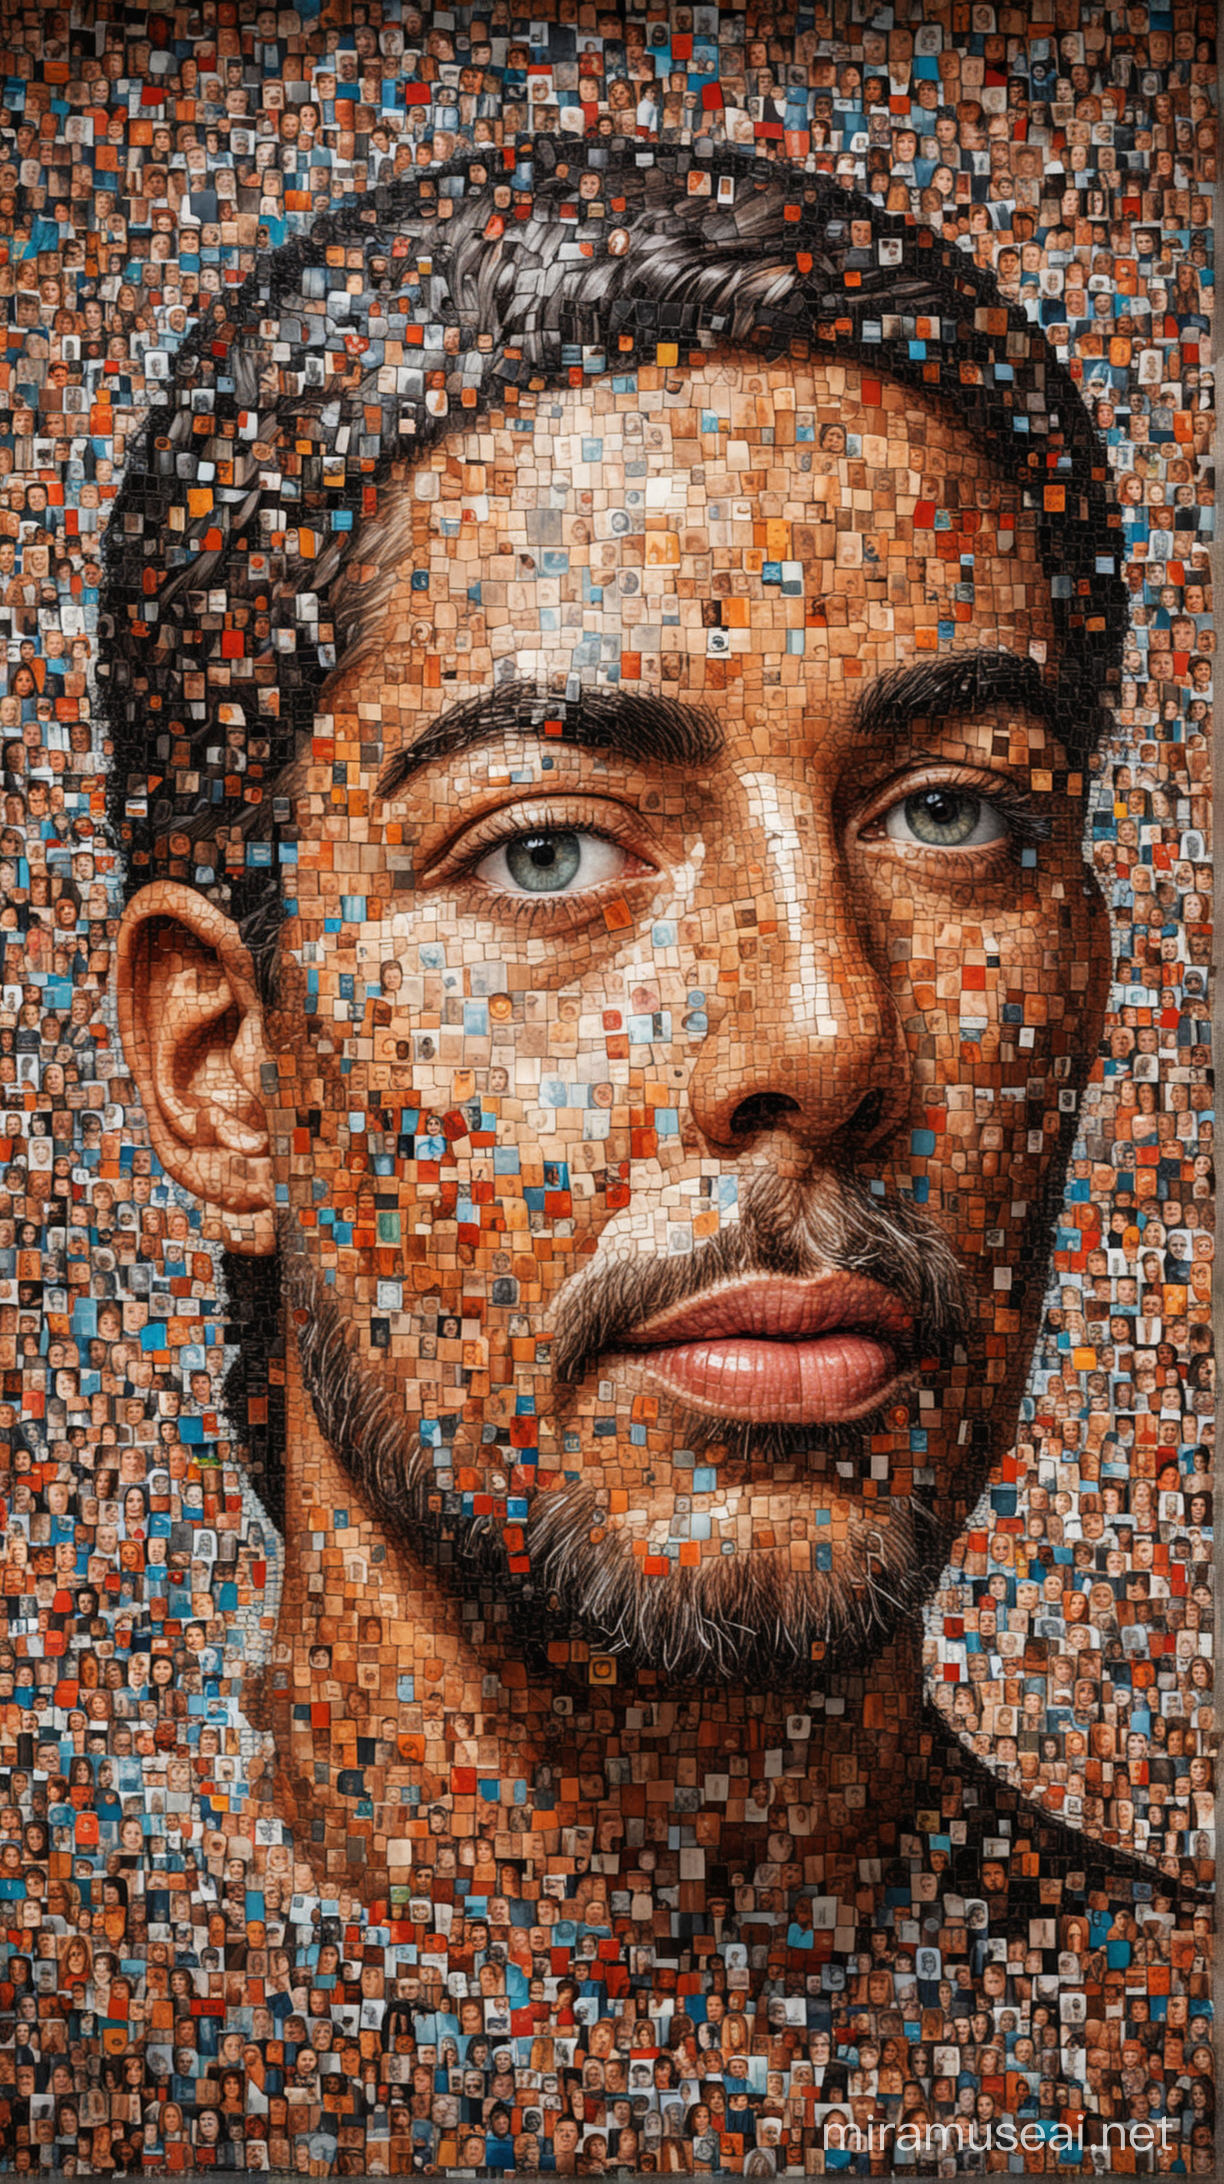 Diverse Voices Unite Vibrant Mosaic of Portraits in Speech Bubble